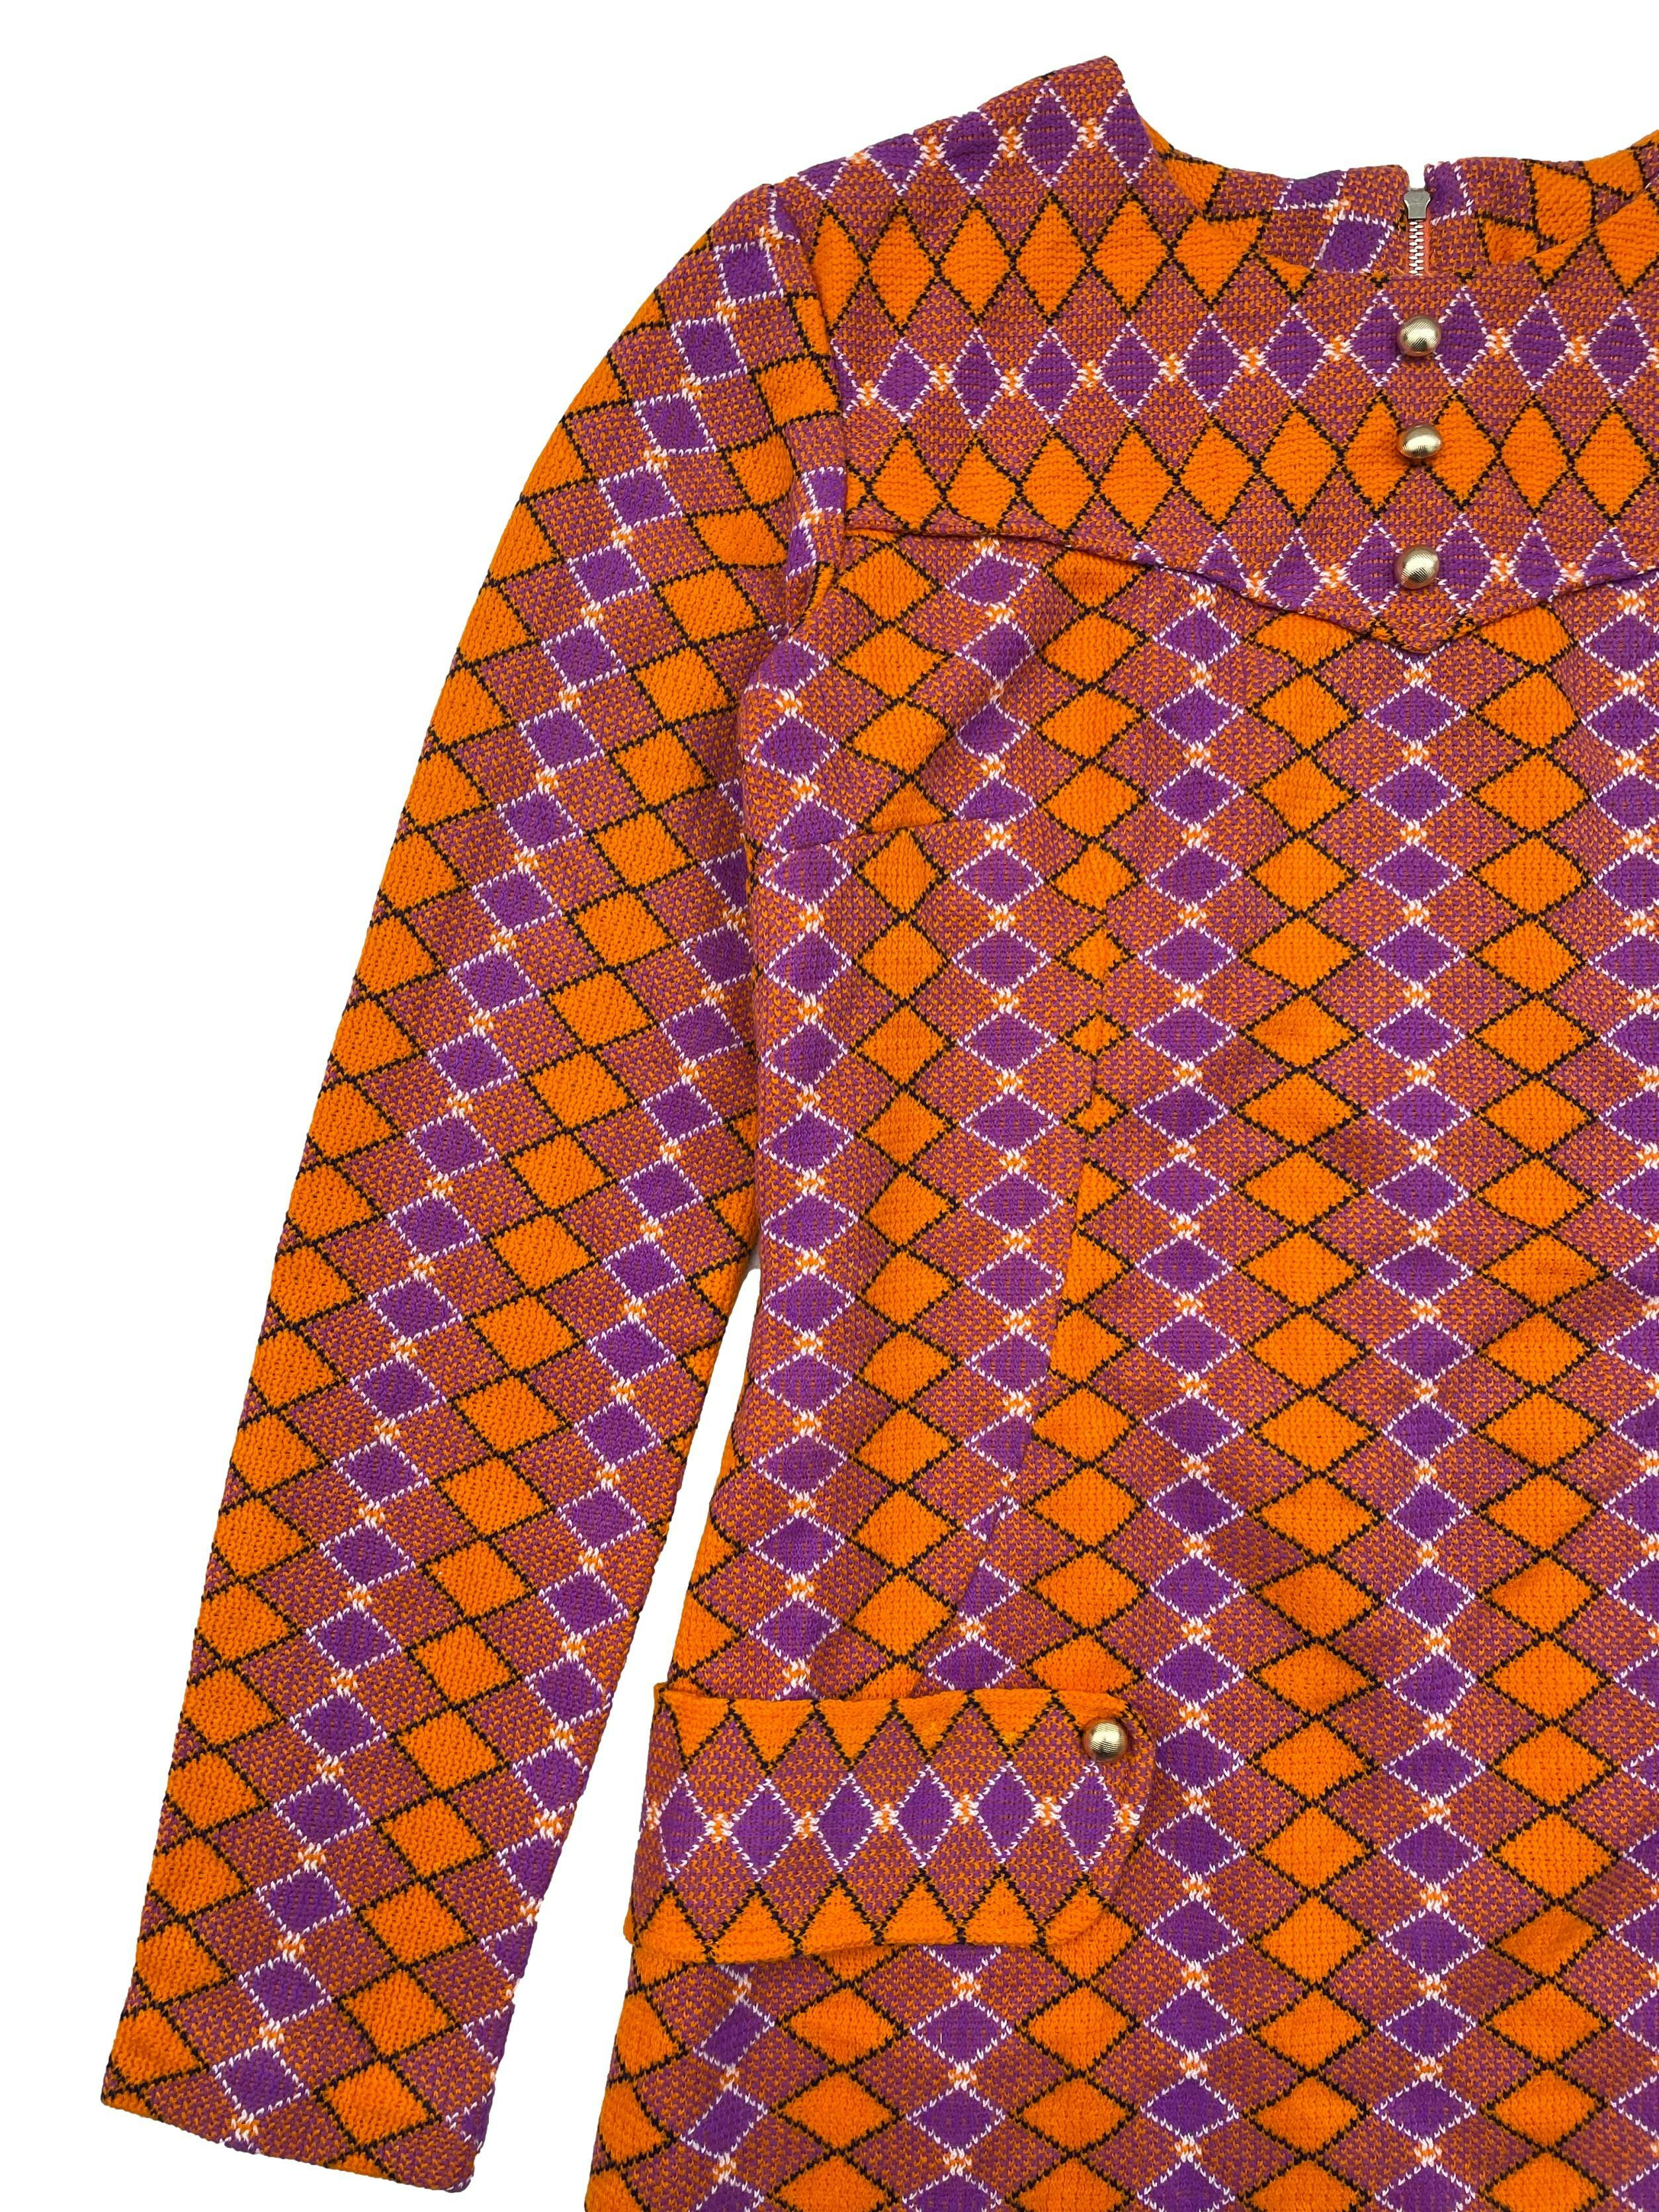 Vestido vintage de tweed con patrón de rombos en naranja y morado, forrado, corte en A,  pinzas, cuello redondo, cierre en espalda y botones dorados. Busto 90cm, Largo 72cm.